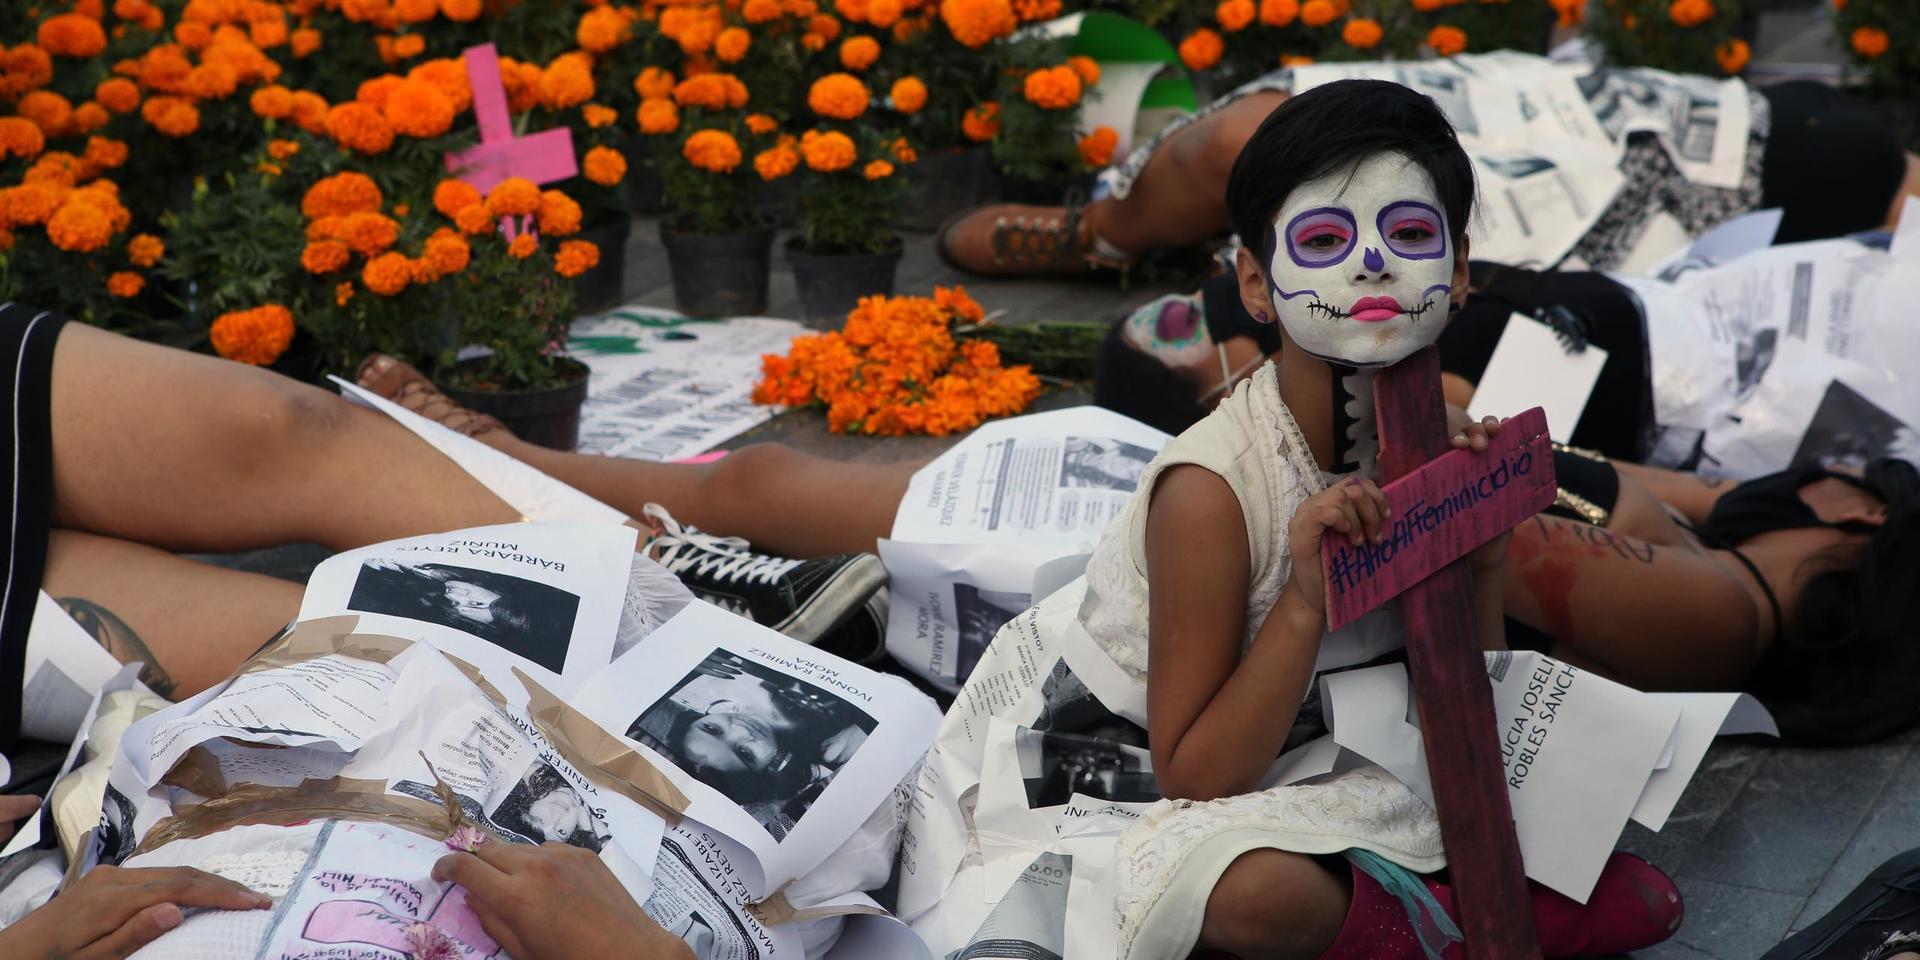 Kvinnor i Mexiko i en protest mot femicid, det vill säga att bli mördad för att man är kvinna.